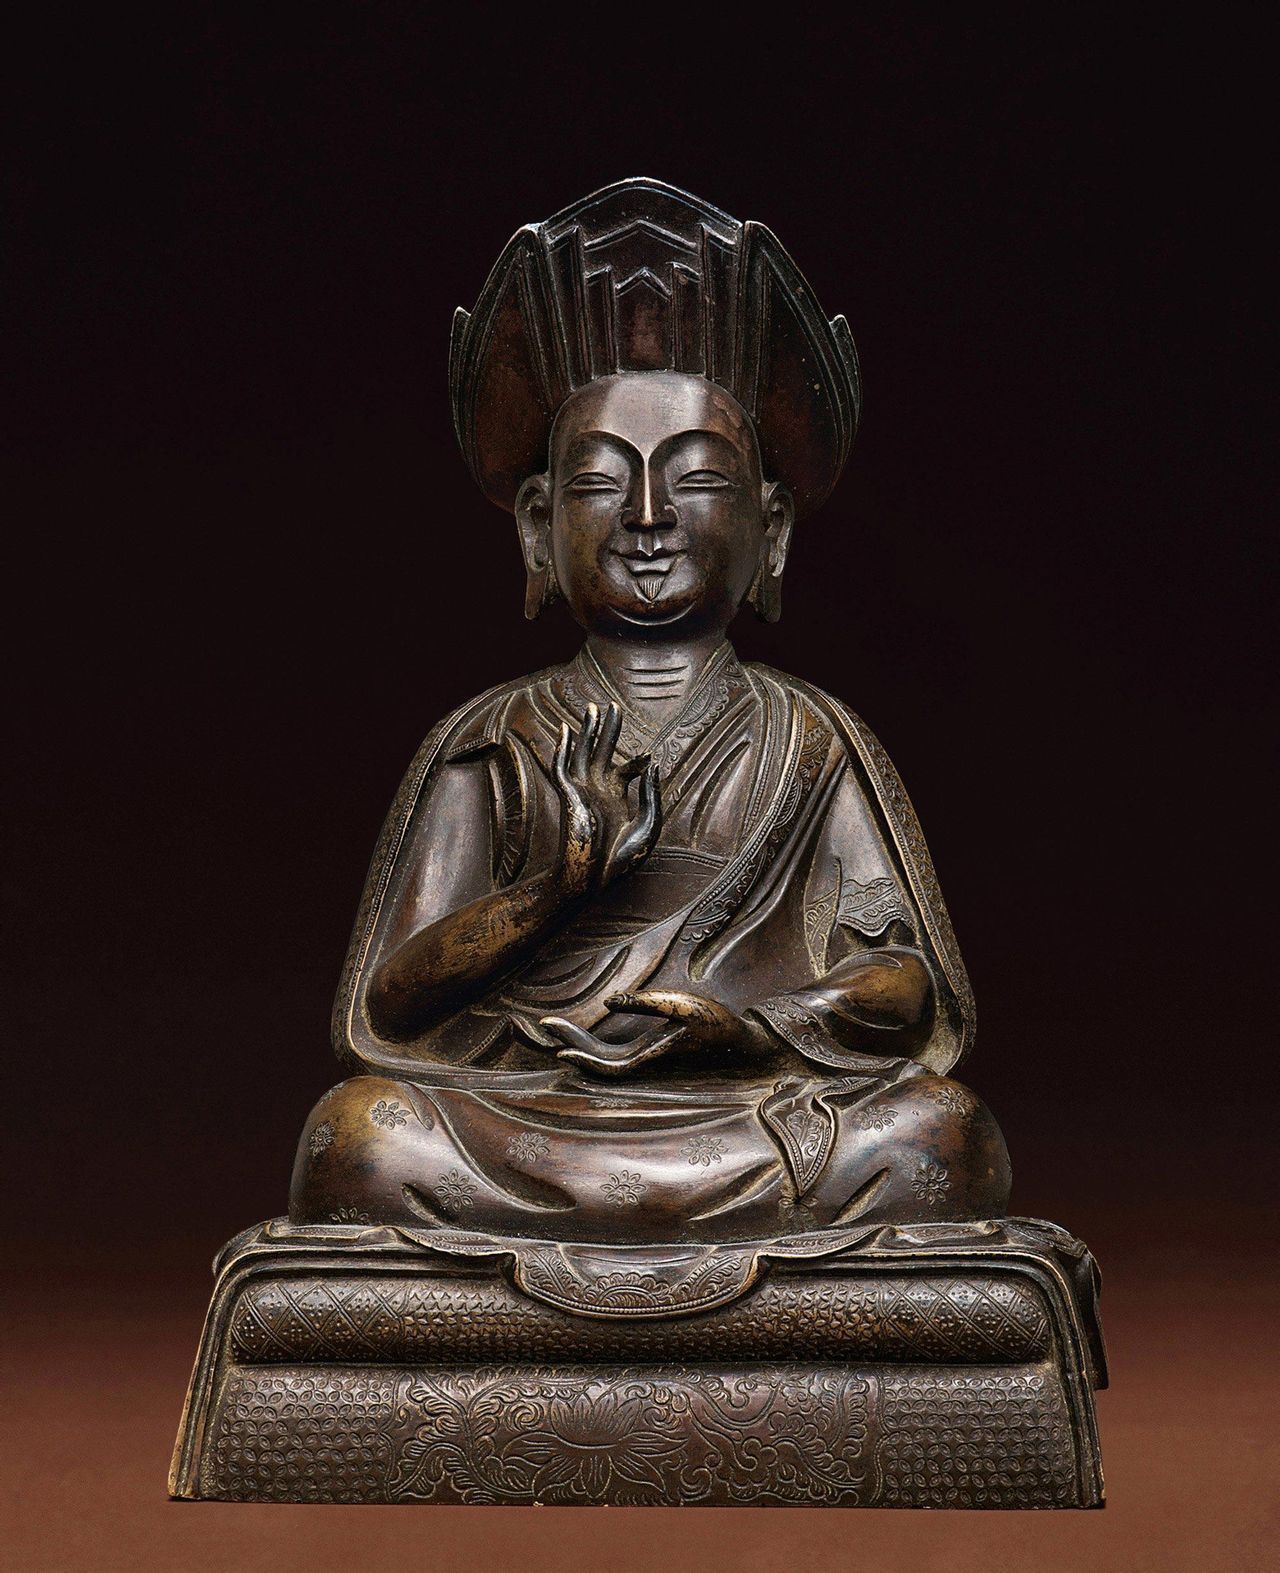 相关)章嘉,呼图克图,是中国内蒙古地区藏传佛教格鲁派最大转世活佛,在